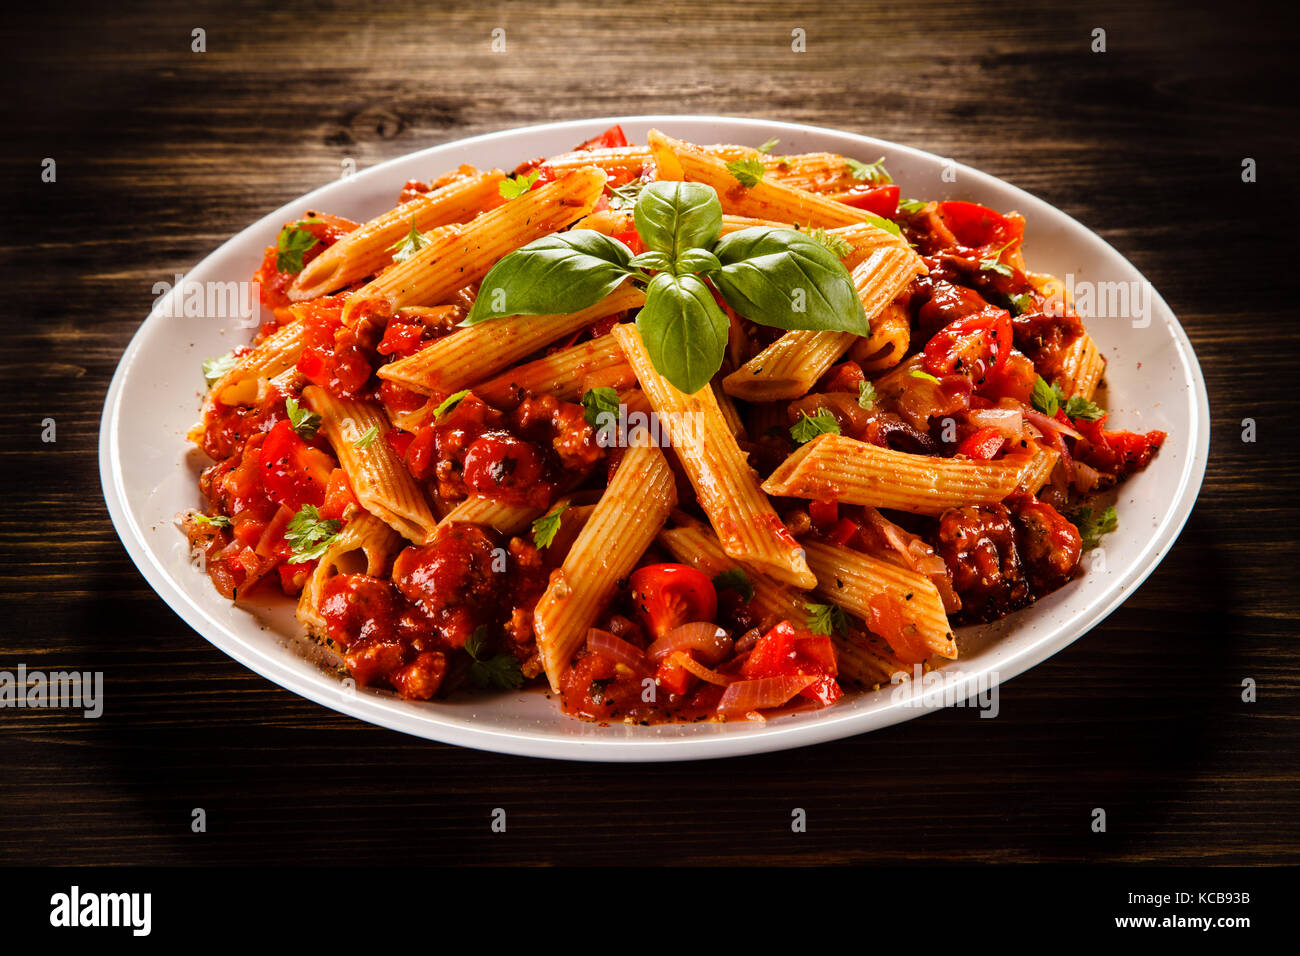 Penne mit Fleisch und Tomatensoße und Gemüse Stockfotografie - Alamy